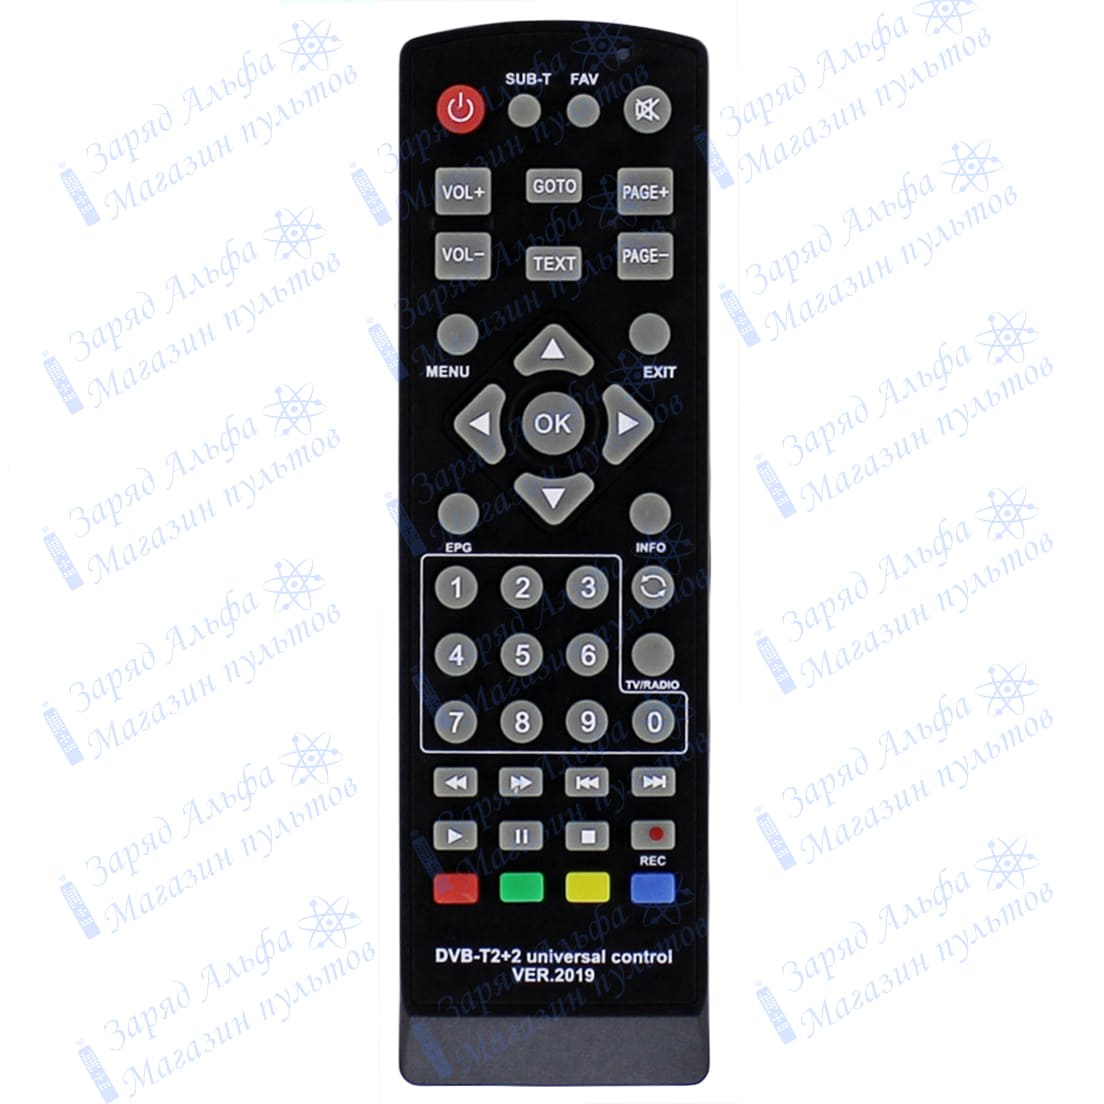 Huayu DVB-T2+2 universal control VER.2019 универсальный пульт для цифровых приставок, ресиверов DVB-T2